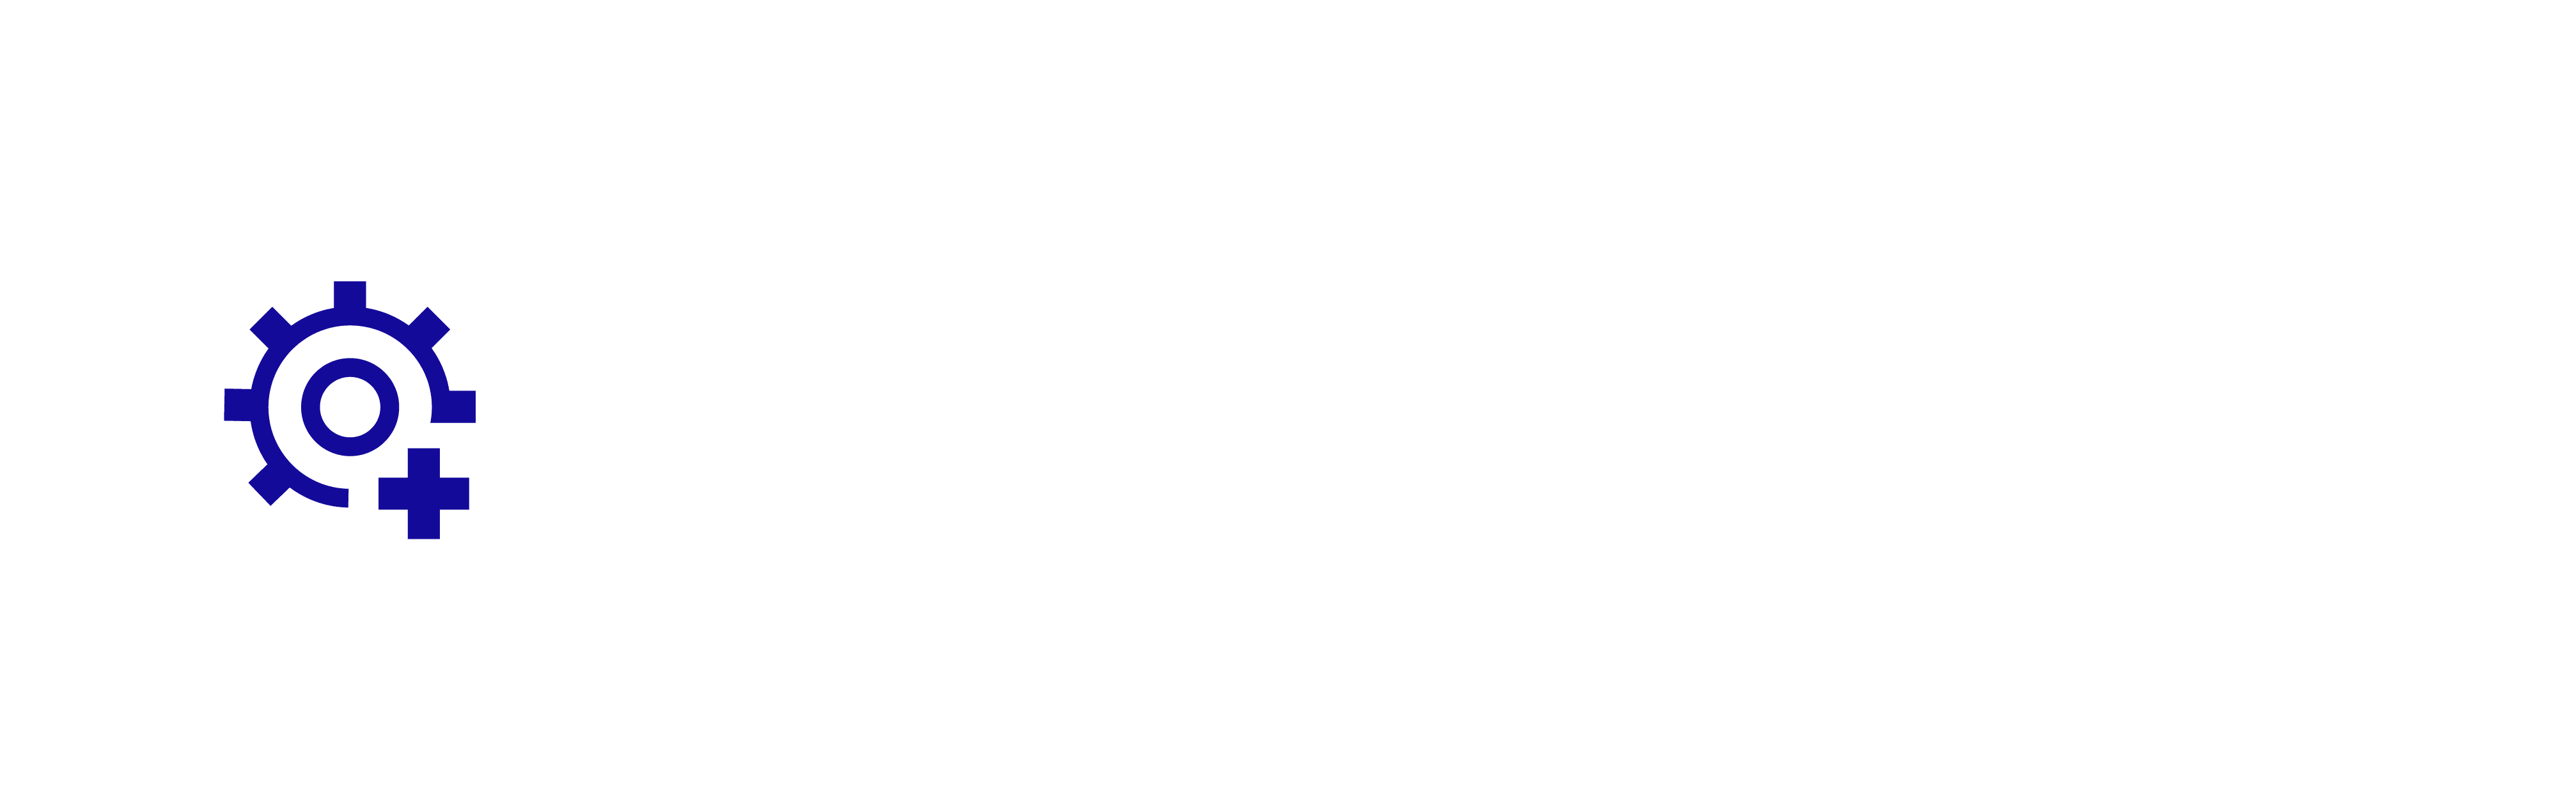 Smart Construction 3D Machine Guidance